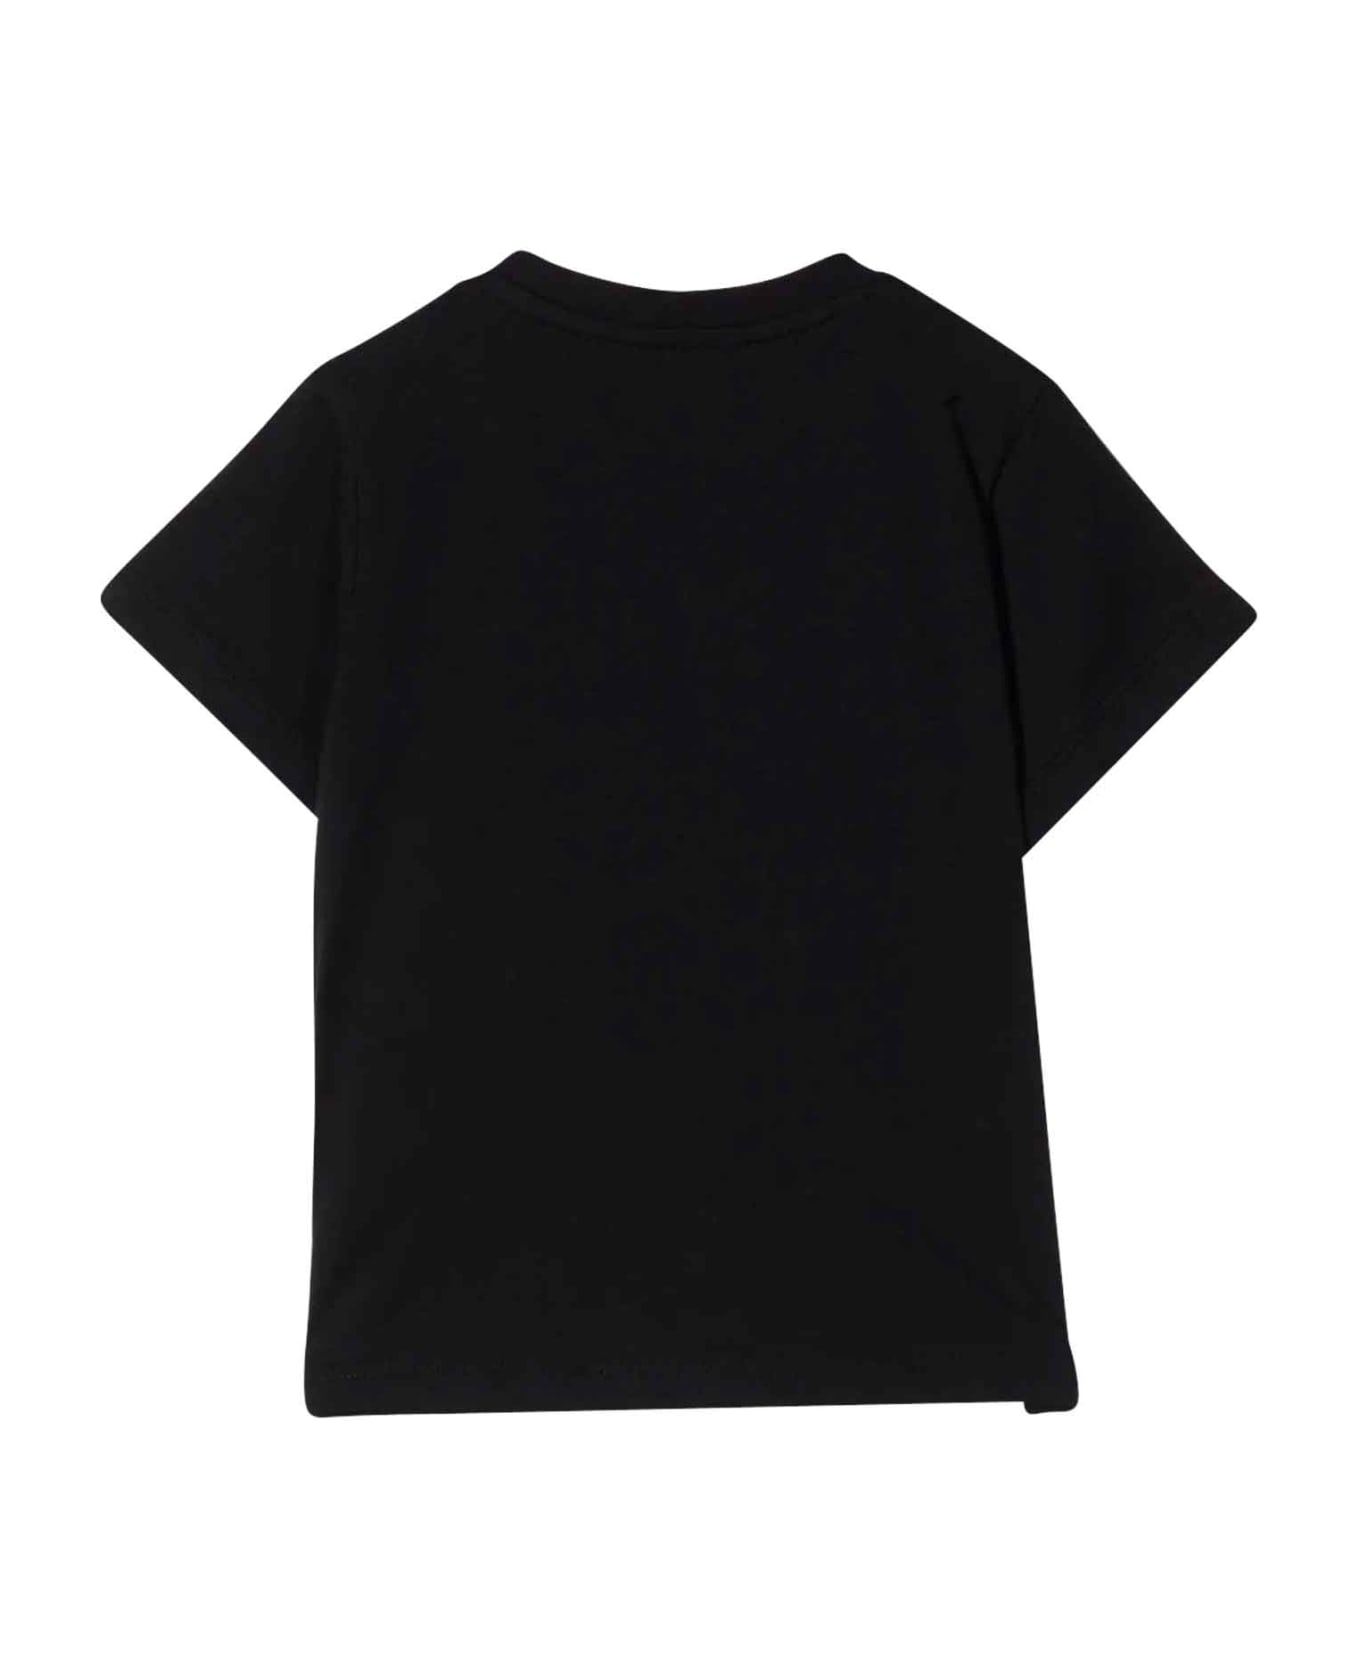 Balmain Black Baby T-shirt With White Print - Nero/bianco